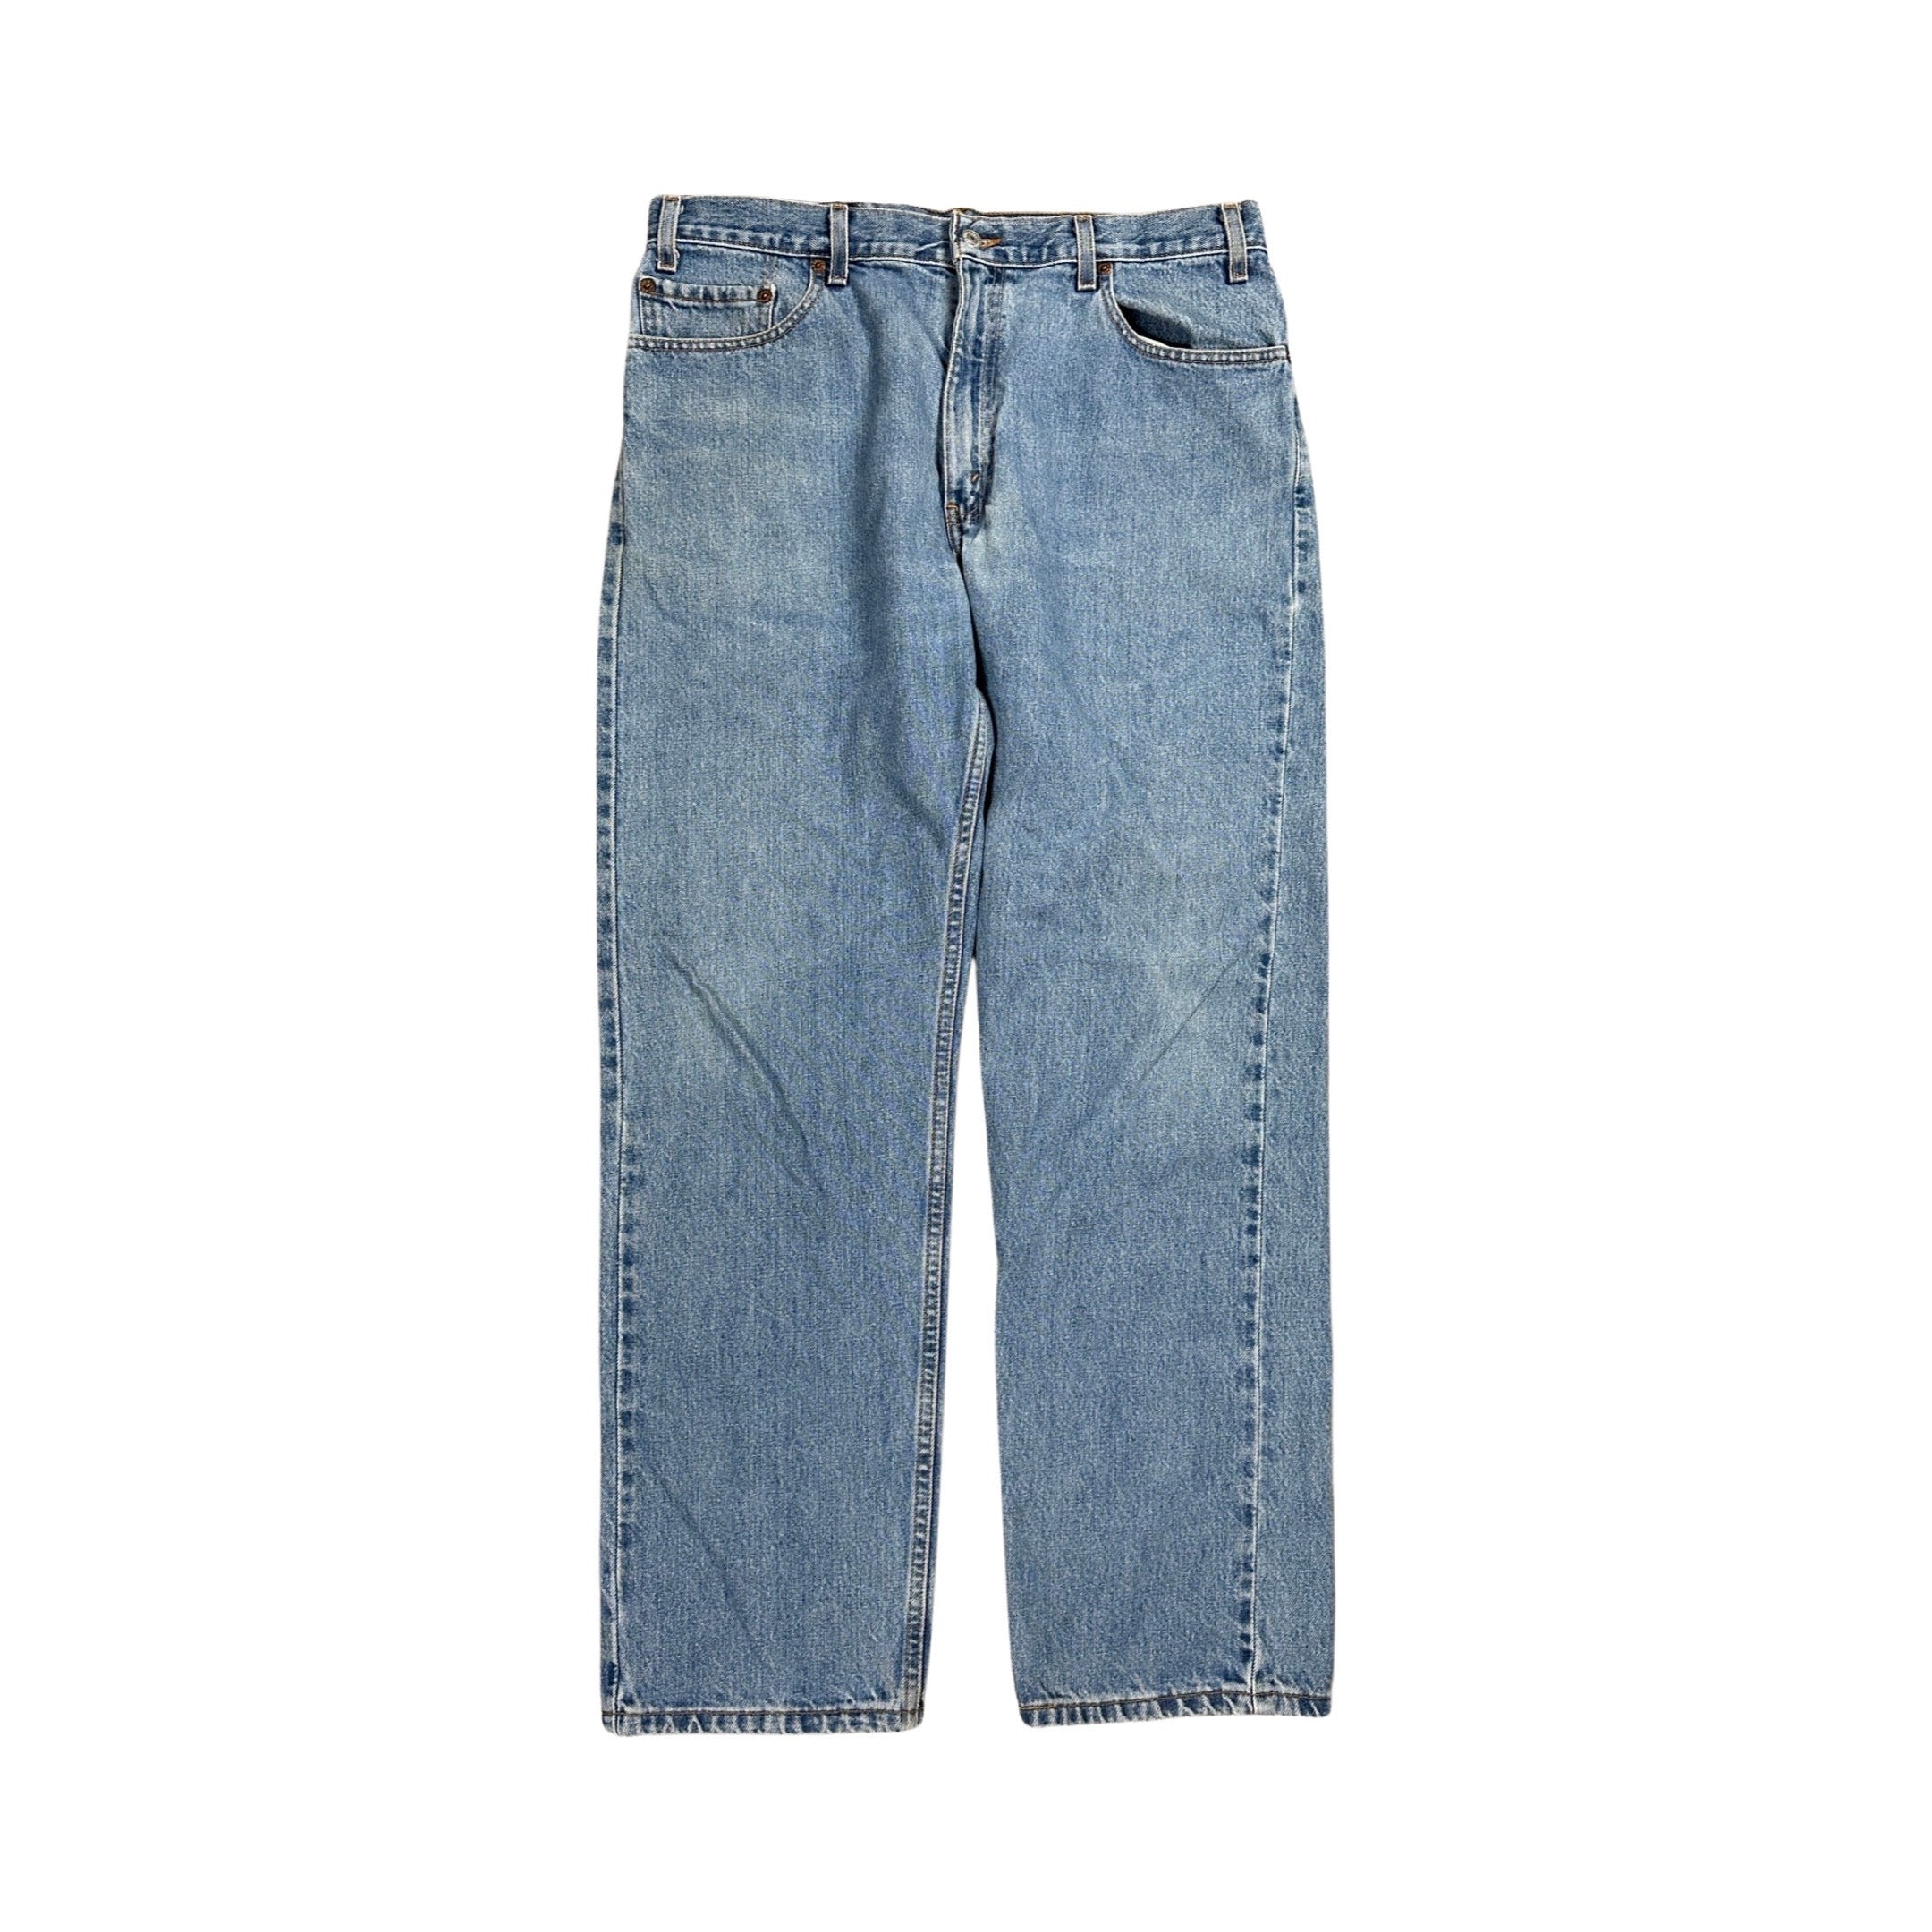 Levi’s 505 Jeans 2001 (35”)